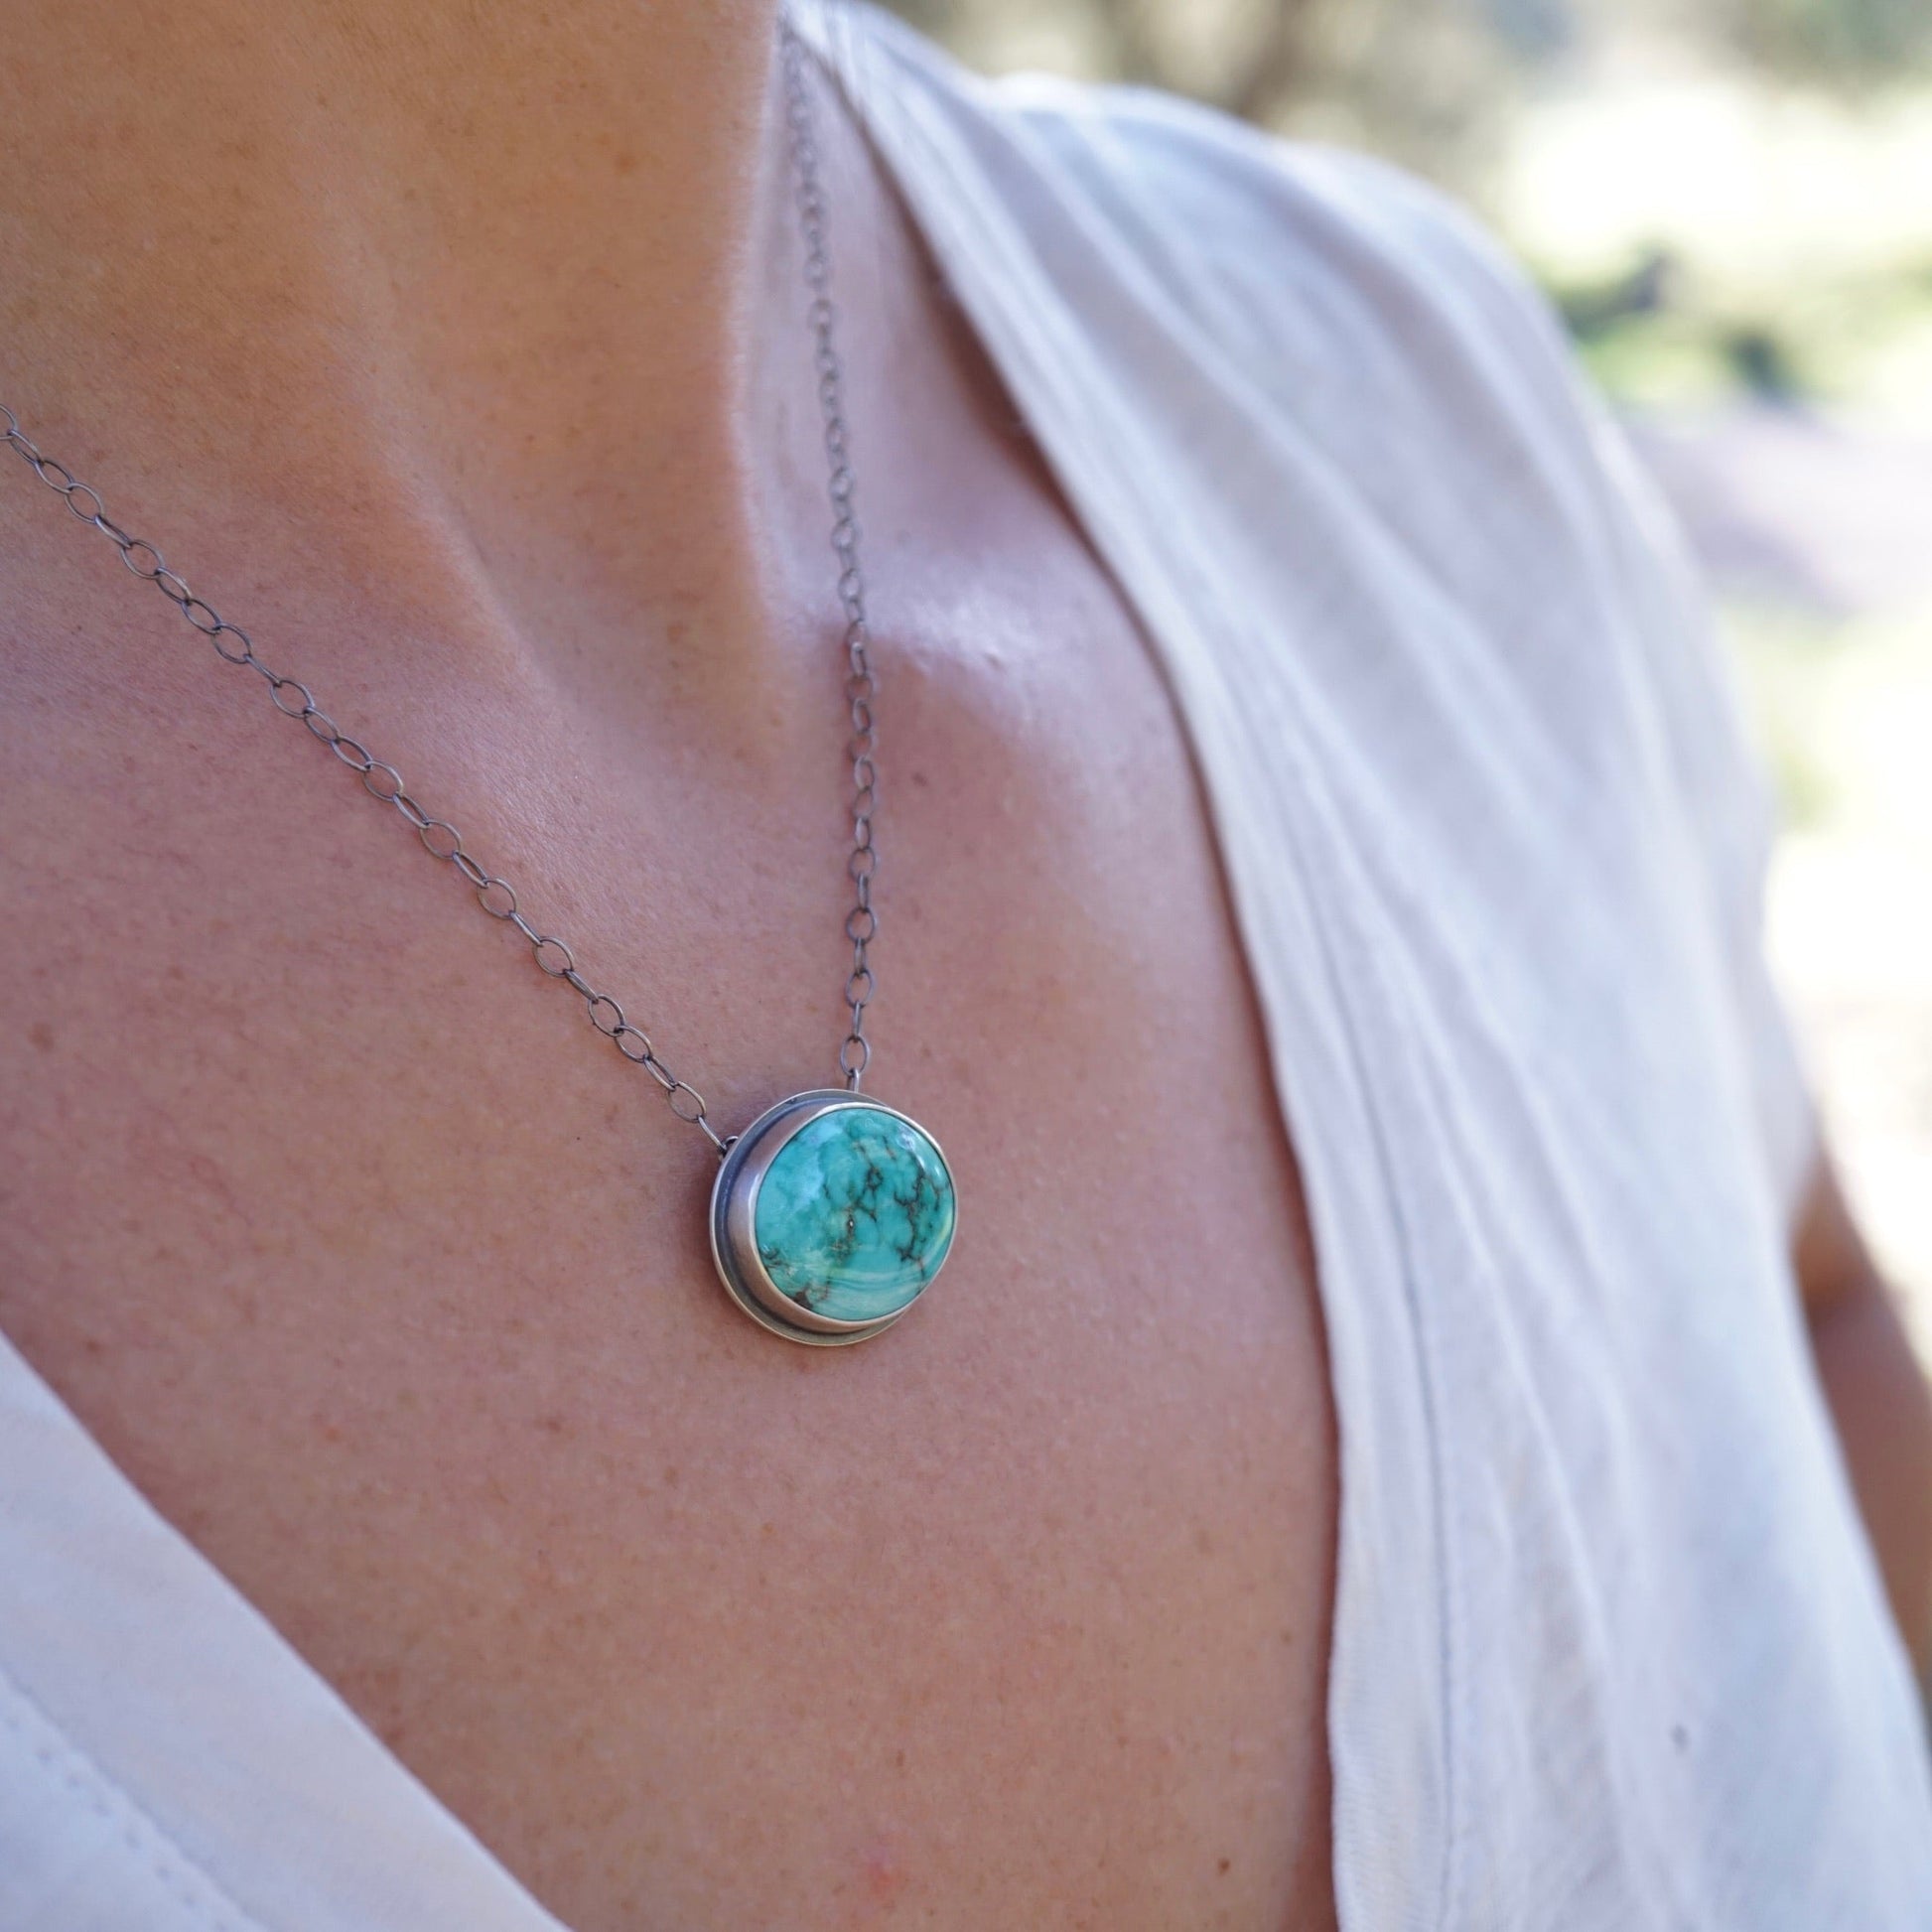 carico lake turquoise oval necklace #2 - Lumenrose